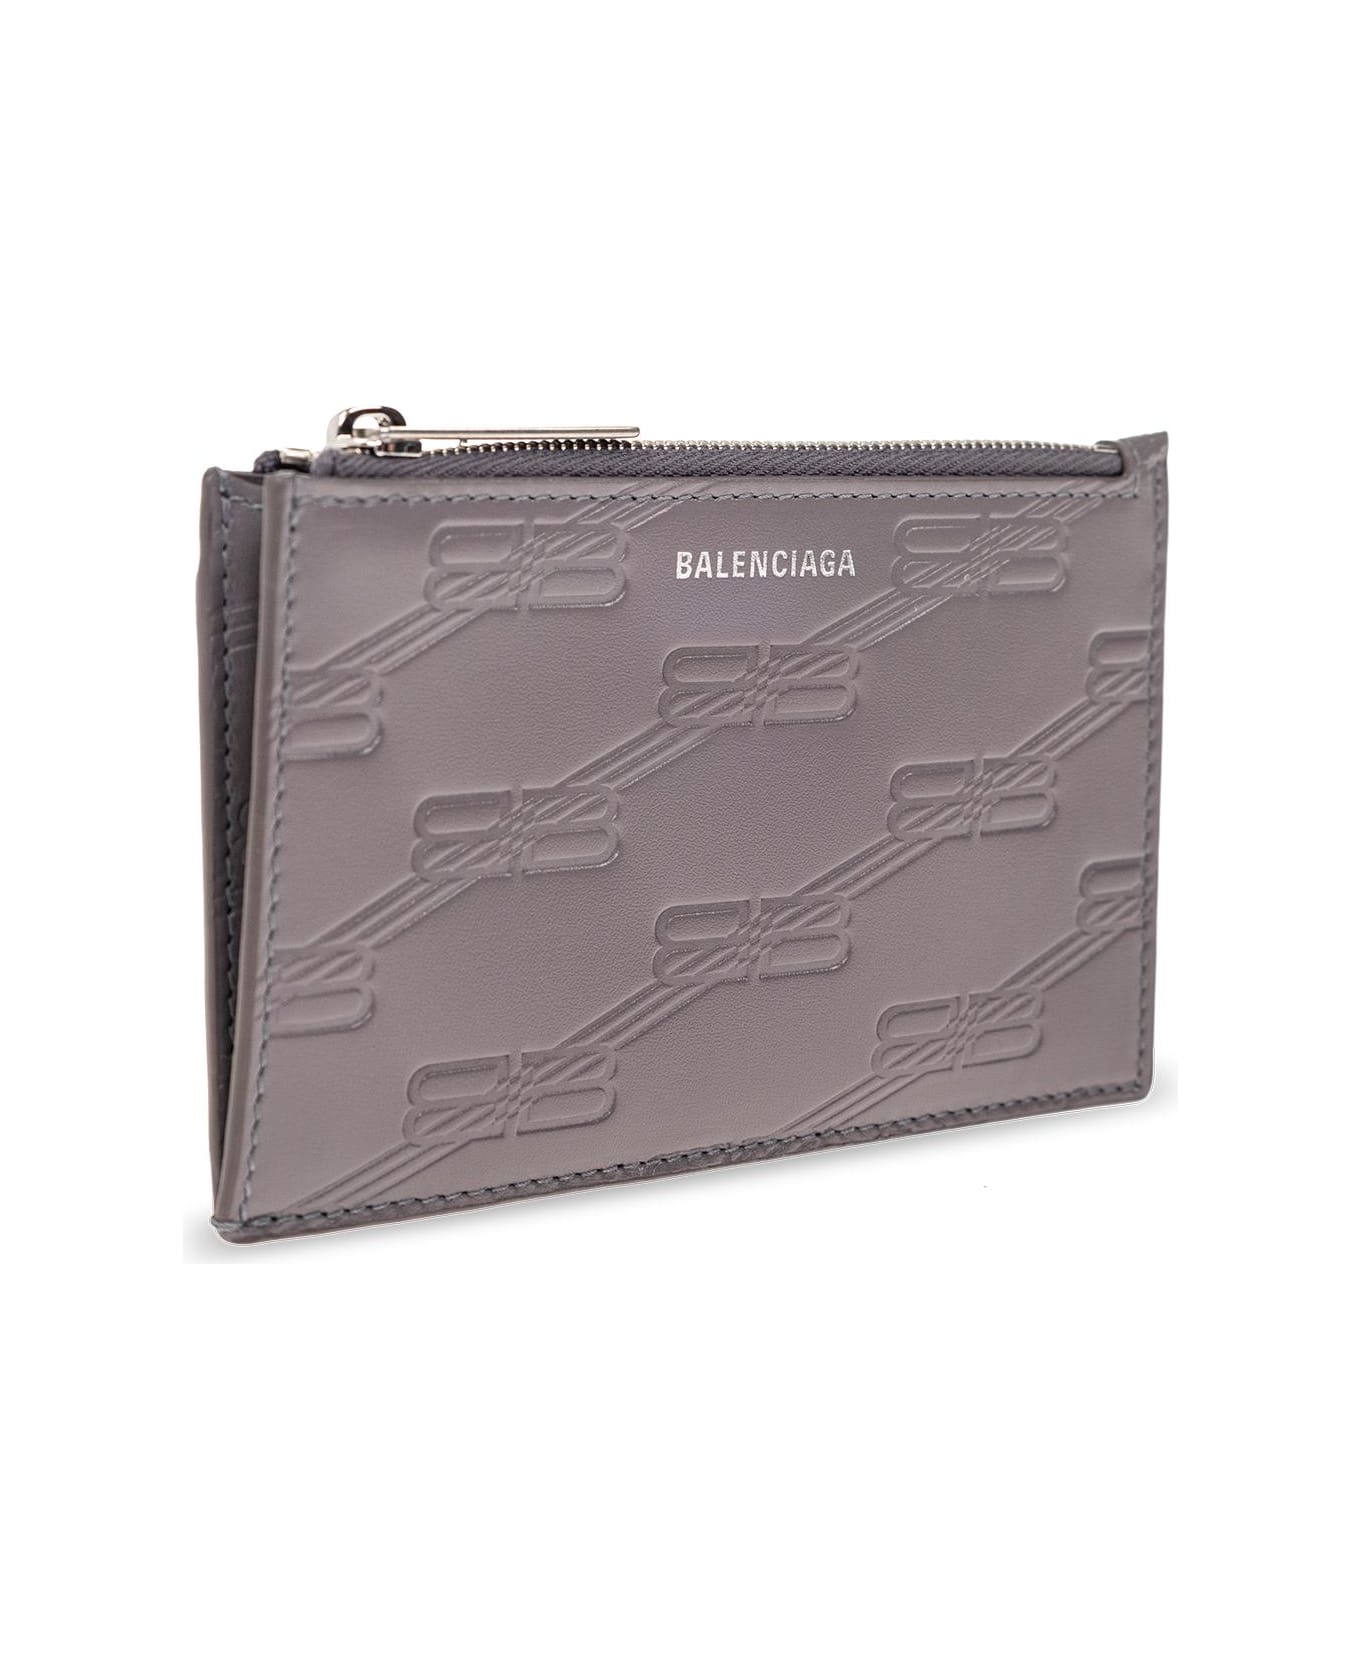 Balenciaga Card Case - GREY 財布